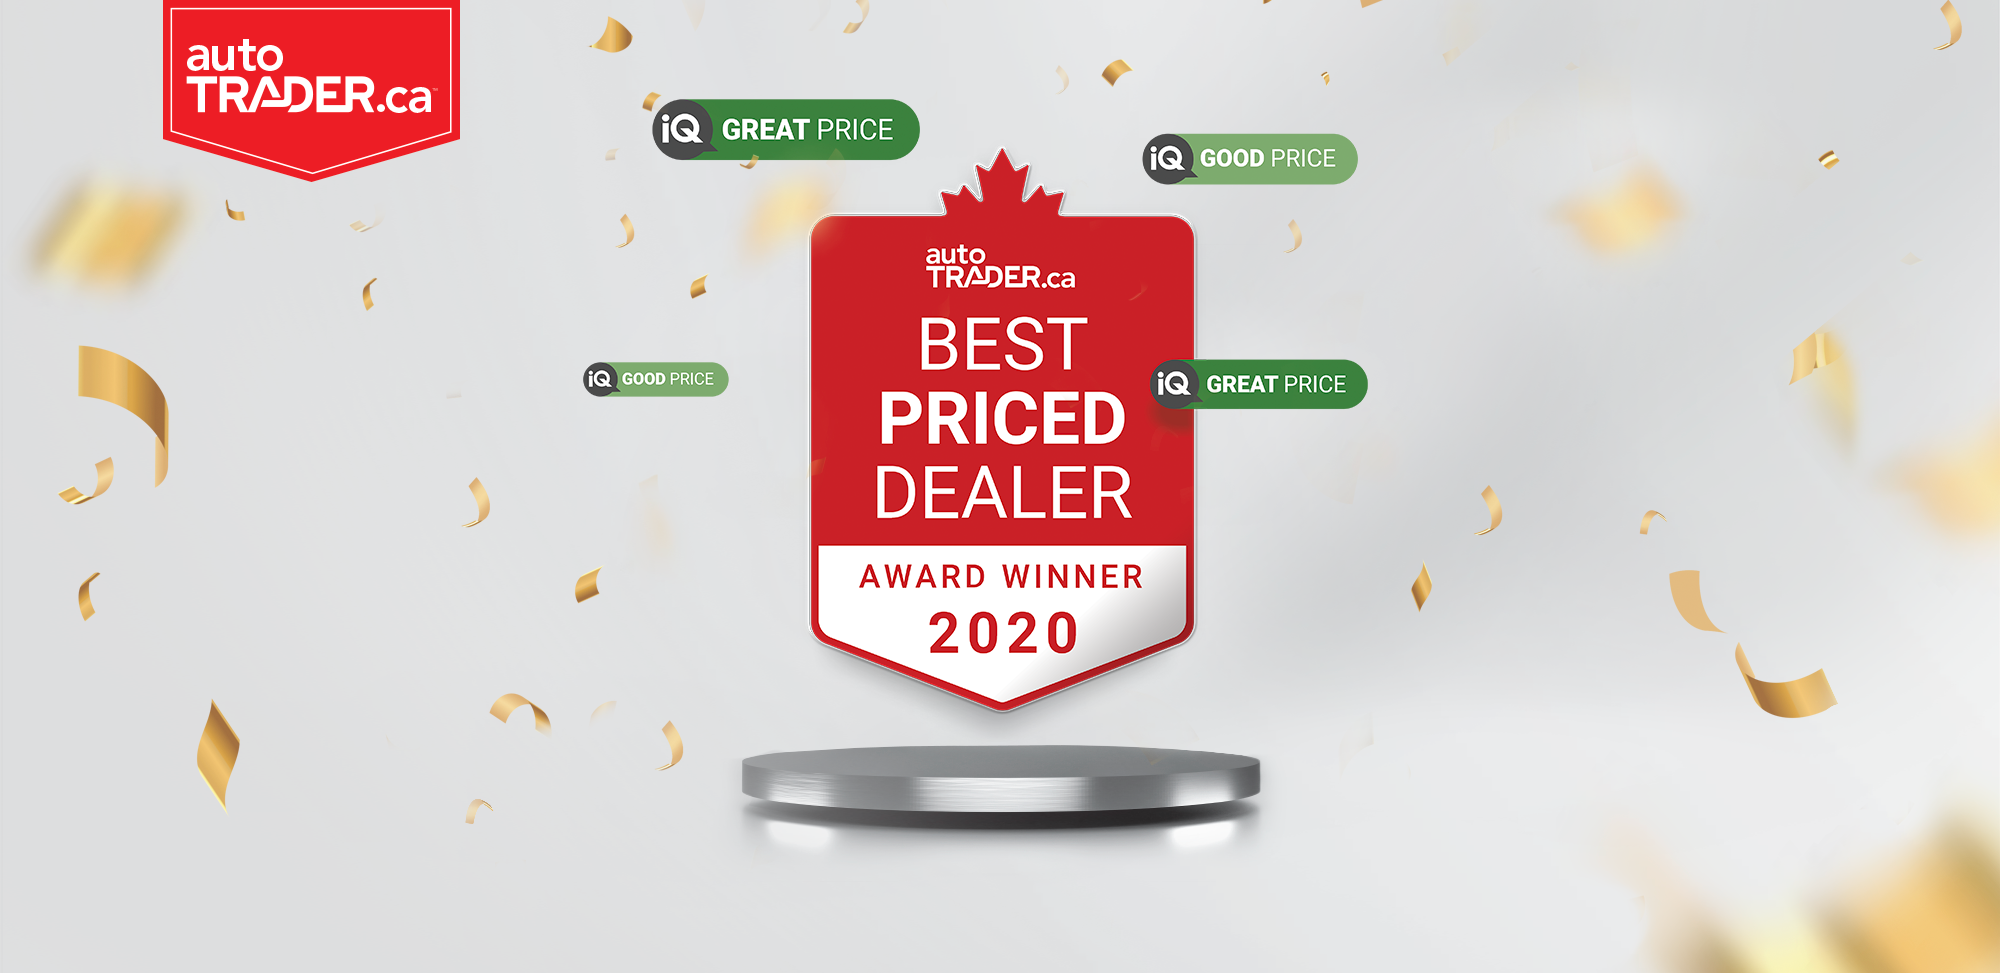 autoTRADER.ca Best Priced Dealer Awards 2020